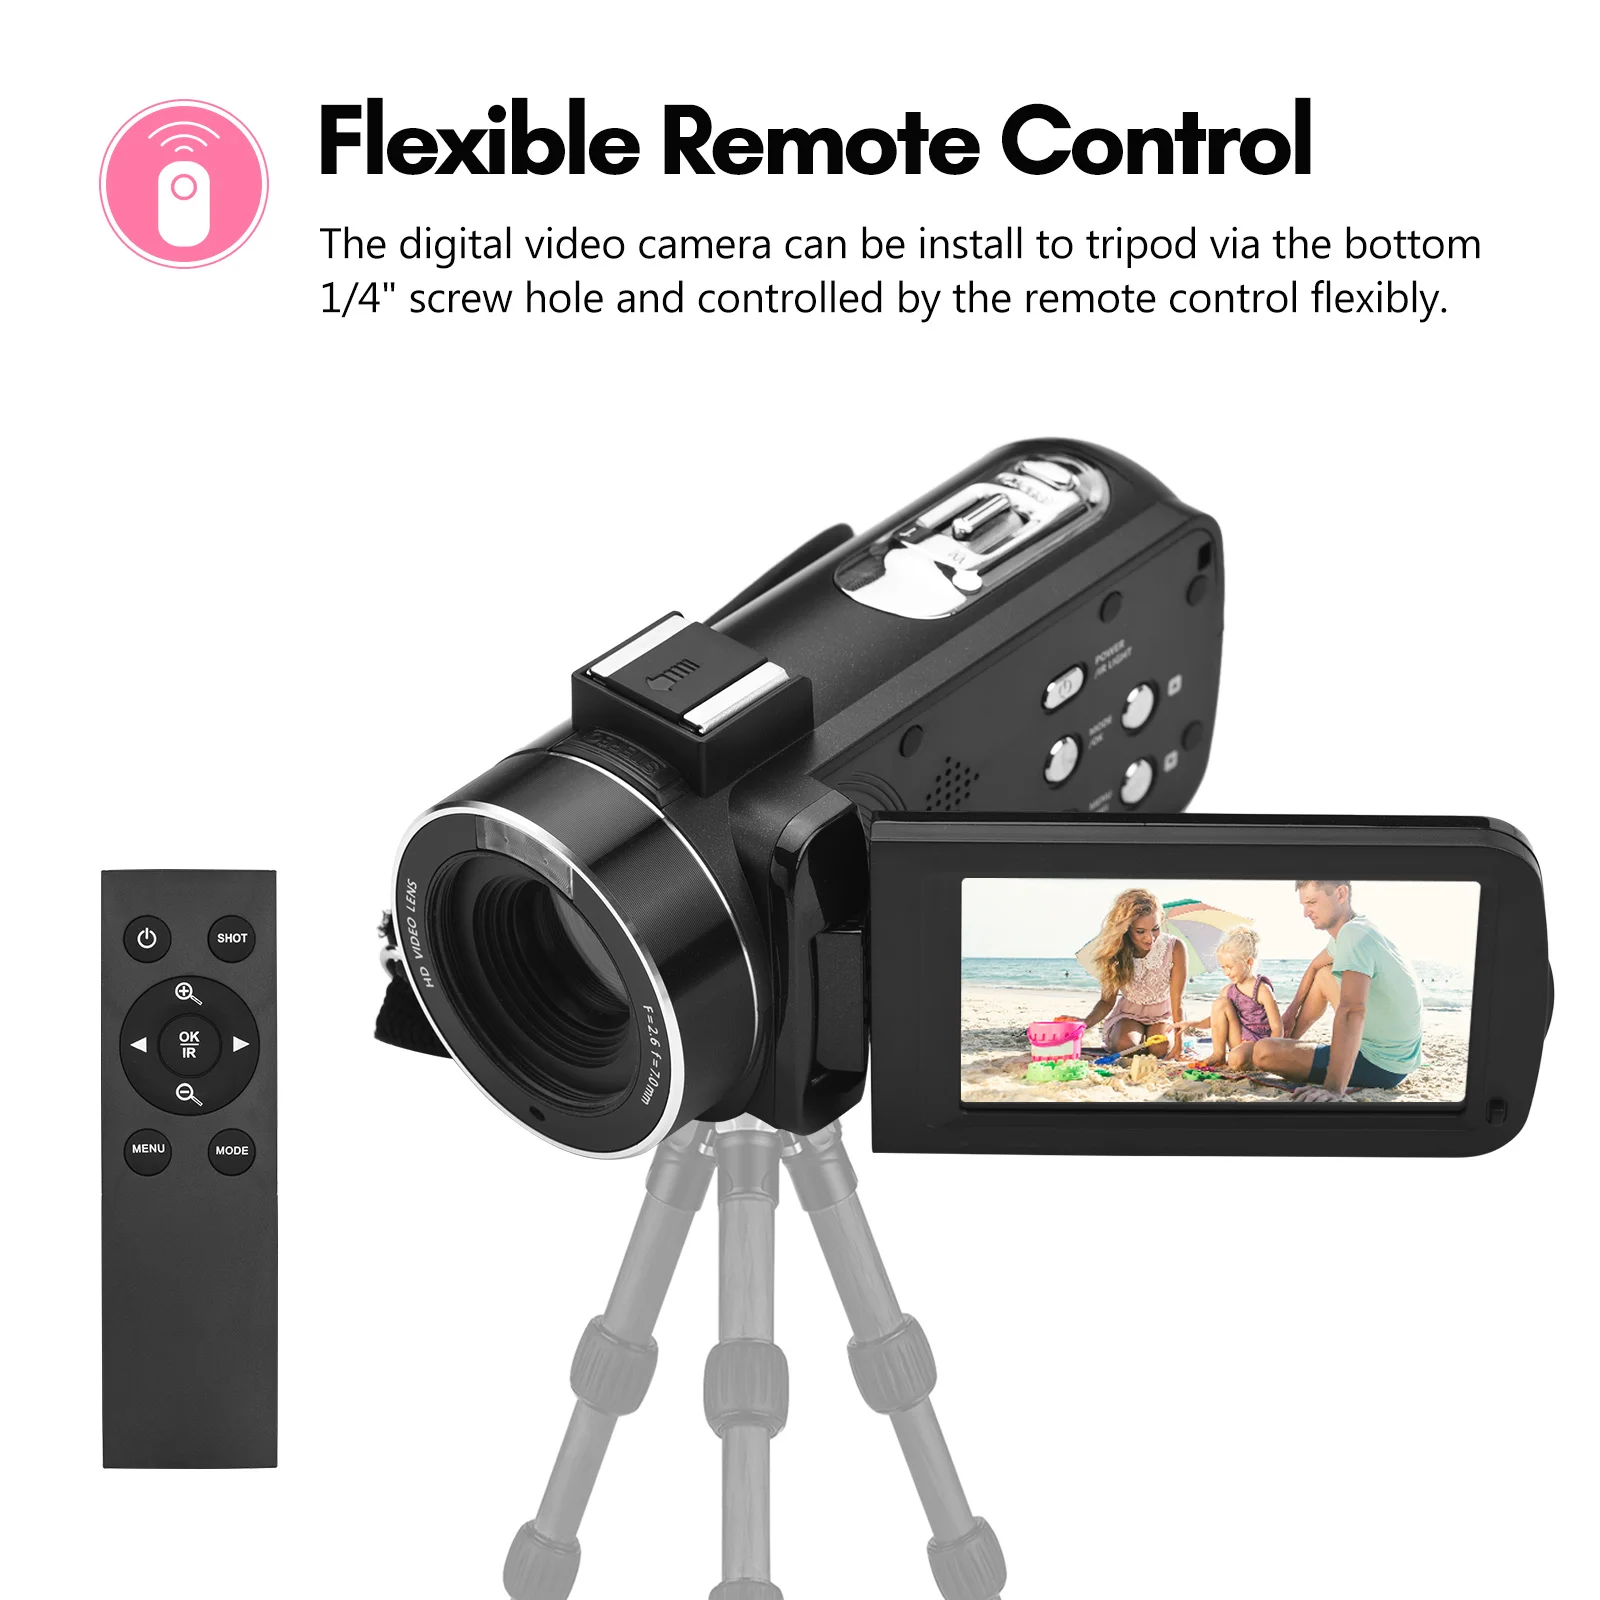 Caméra HD numérique mini DV neutre -noire, Caméscope Pro Caméra